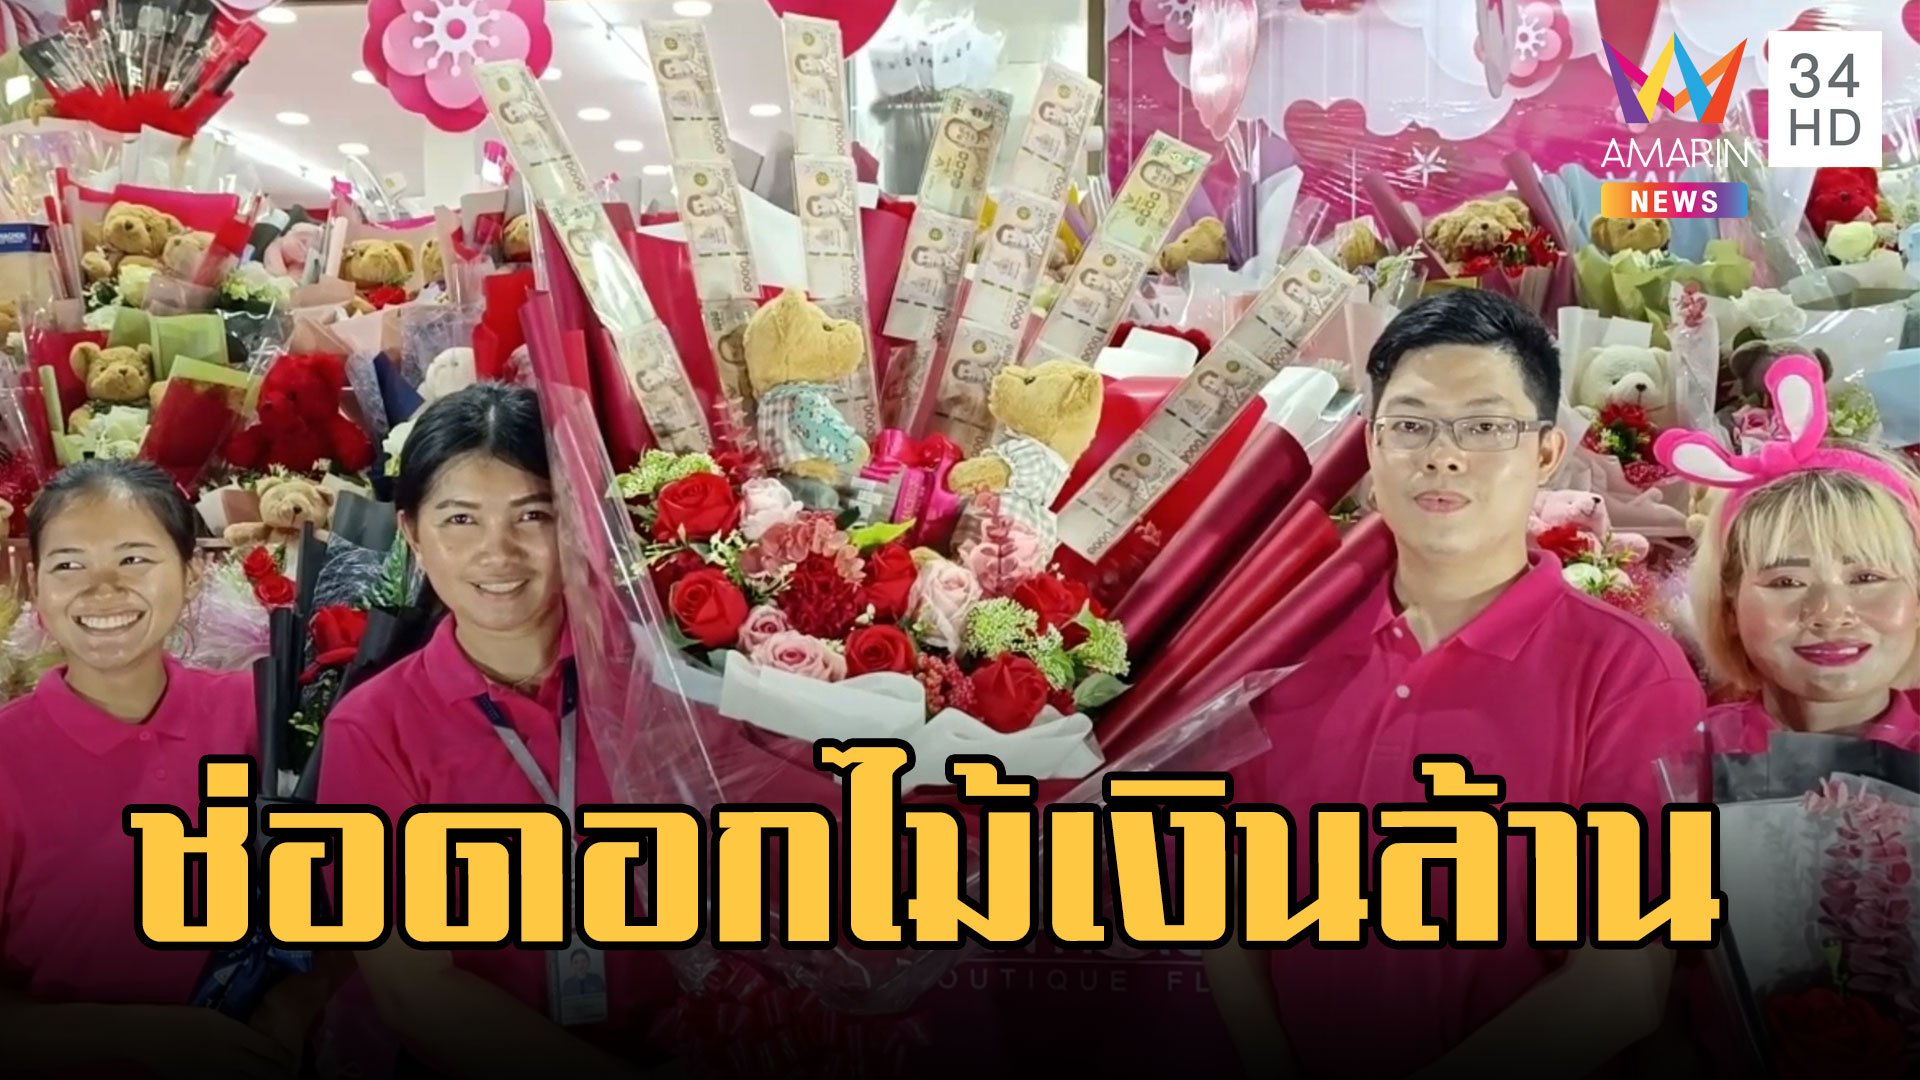 ช่อดอกไม้เงินล้าน เซอร์ไพรส์แฟนวันวาเลนไทน์  | ข่าวเที่ยงอมรินทร์ | 13 ก.พ. 66 | AMARIN TVHD34